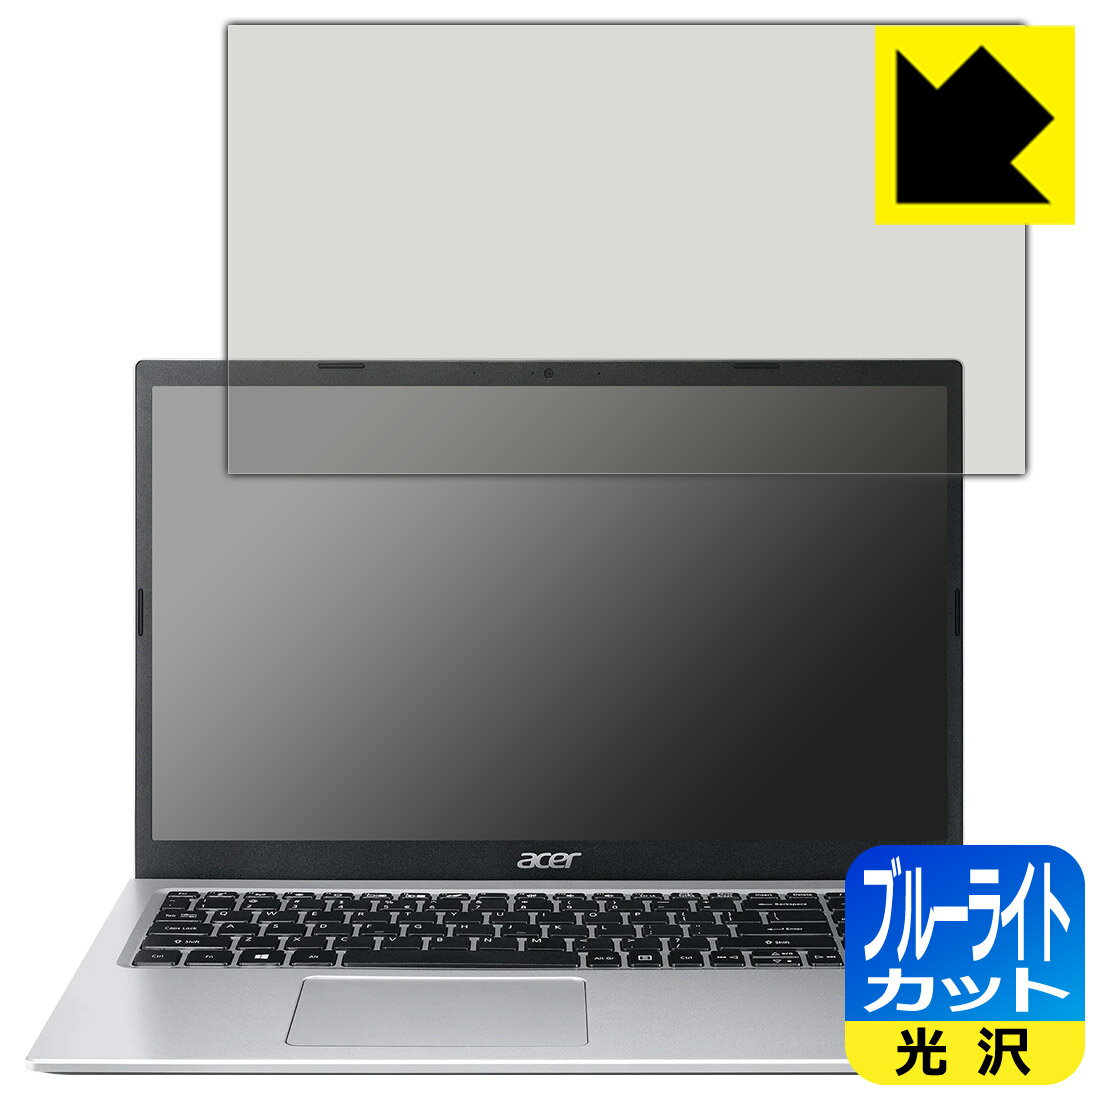 ブルーライトカット保護フィルム Acer Aspire 3 (A315-58シリーズ) 日本製 自社製造直販